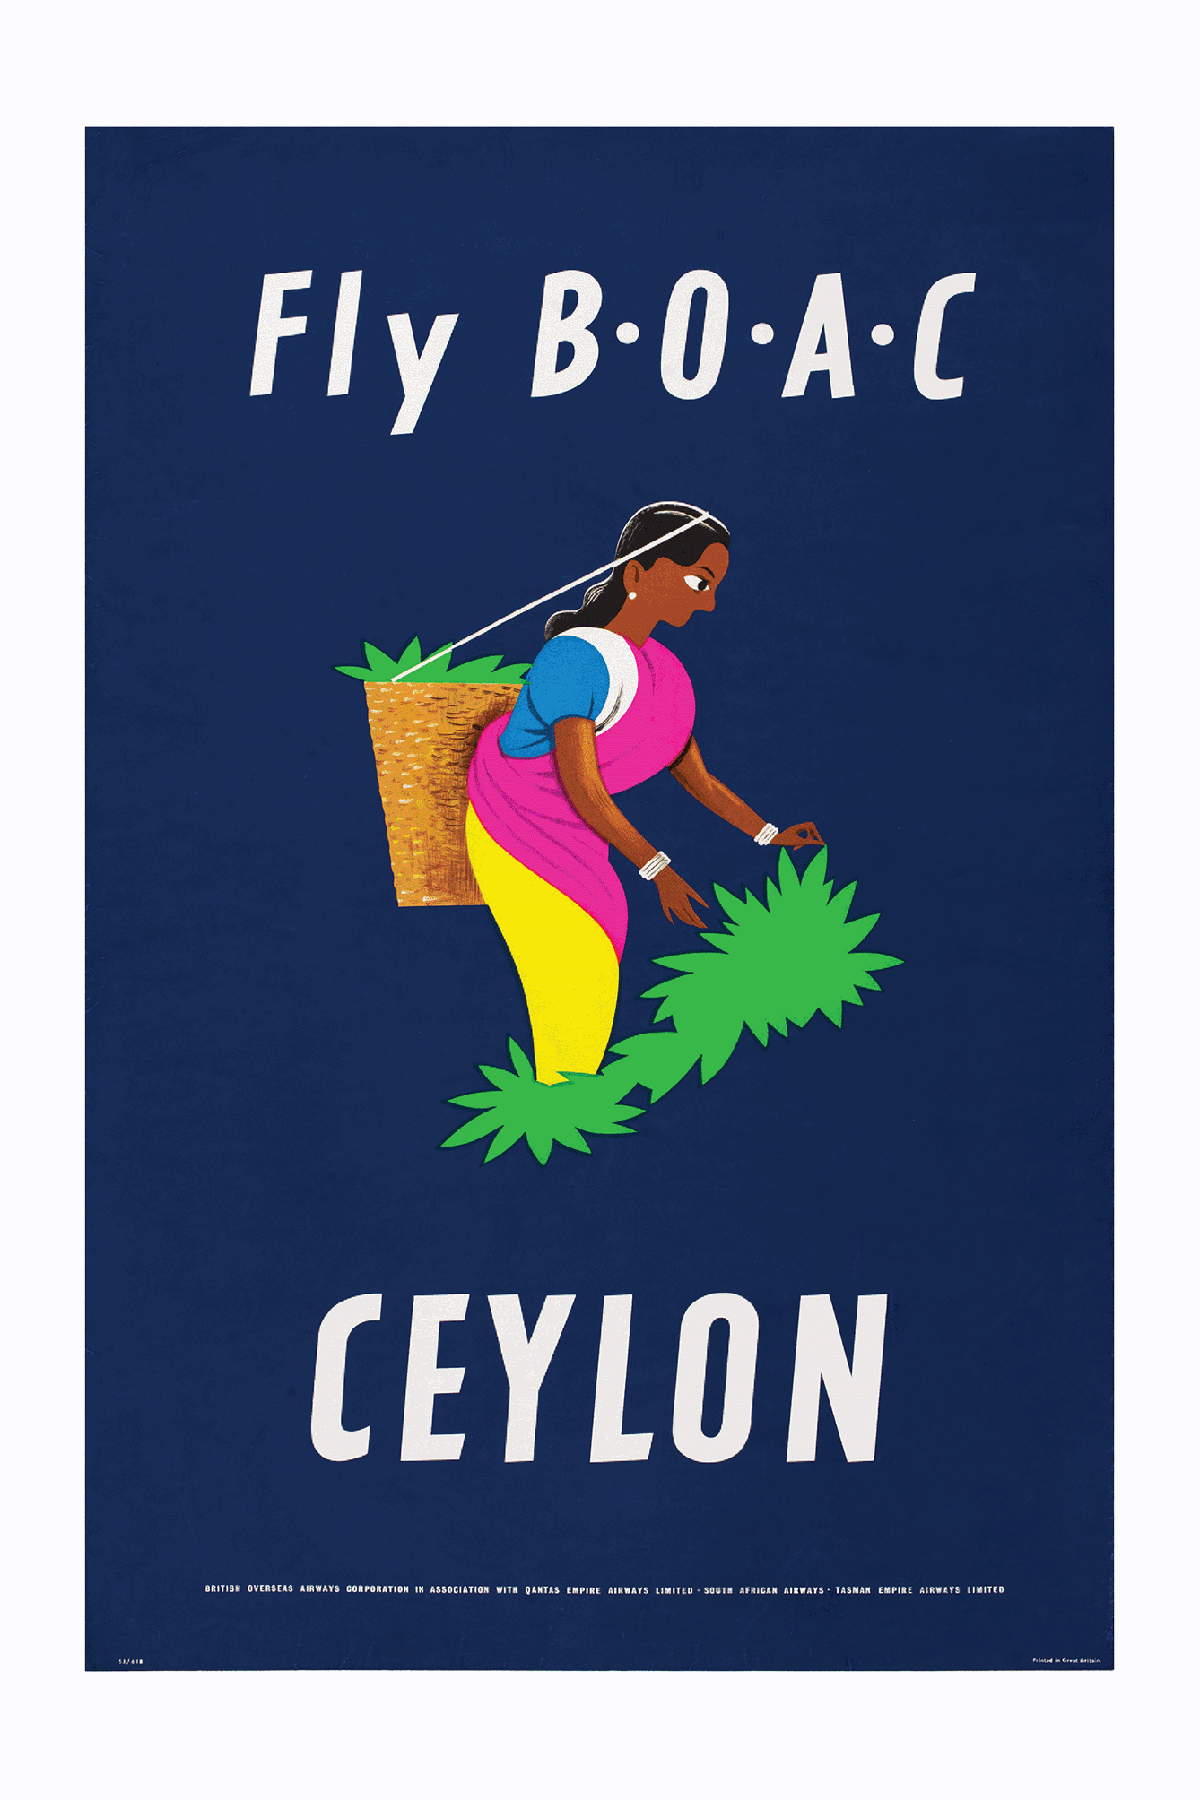 Fly Boac To Ceylon, Tea Picker, 1953.